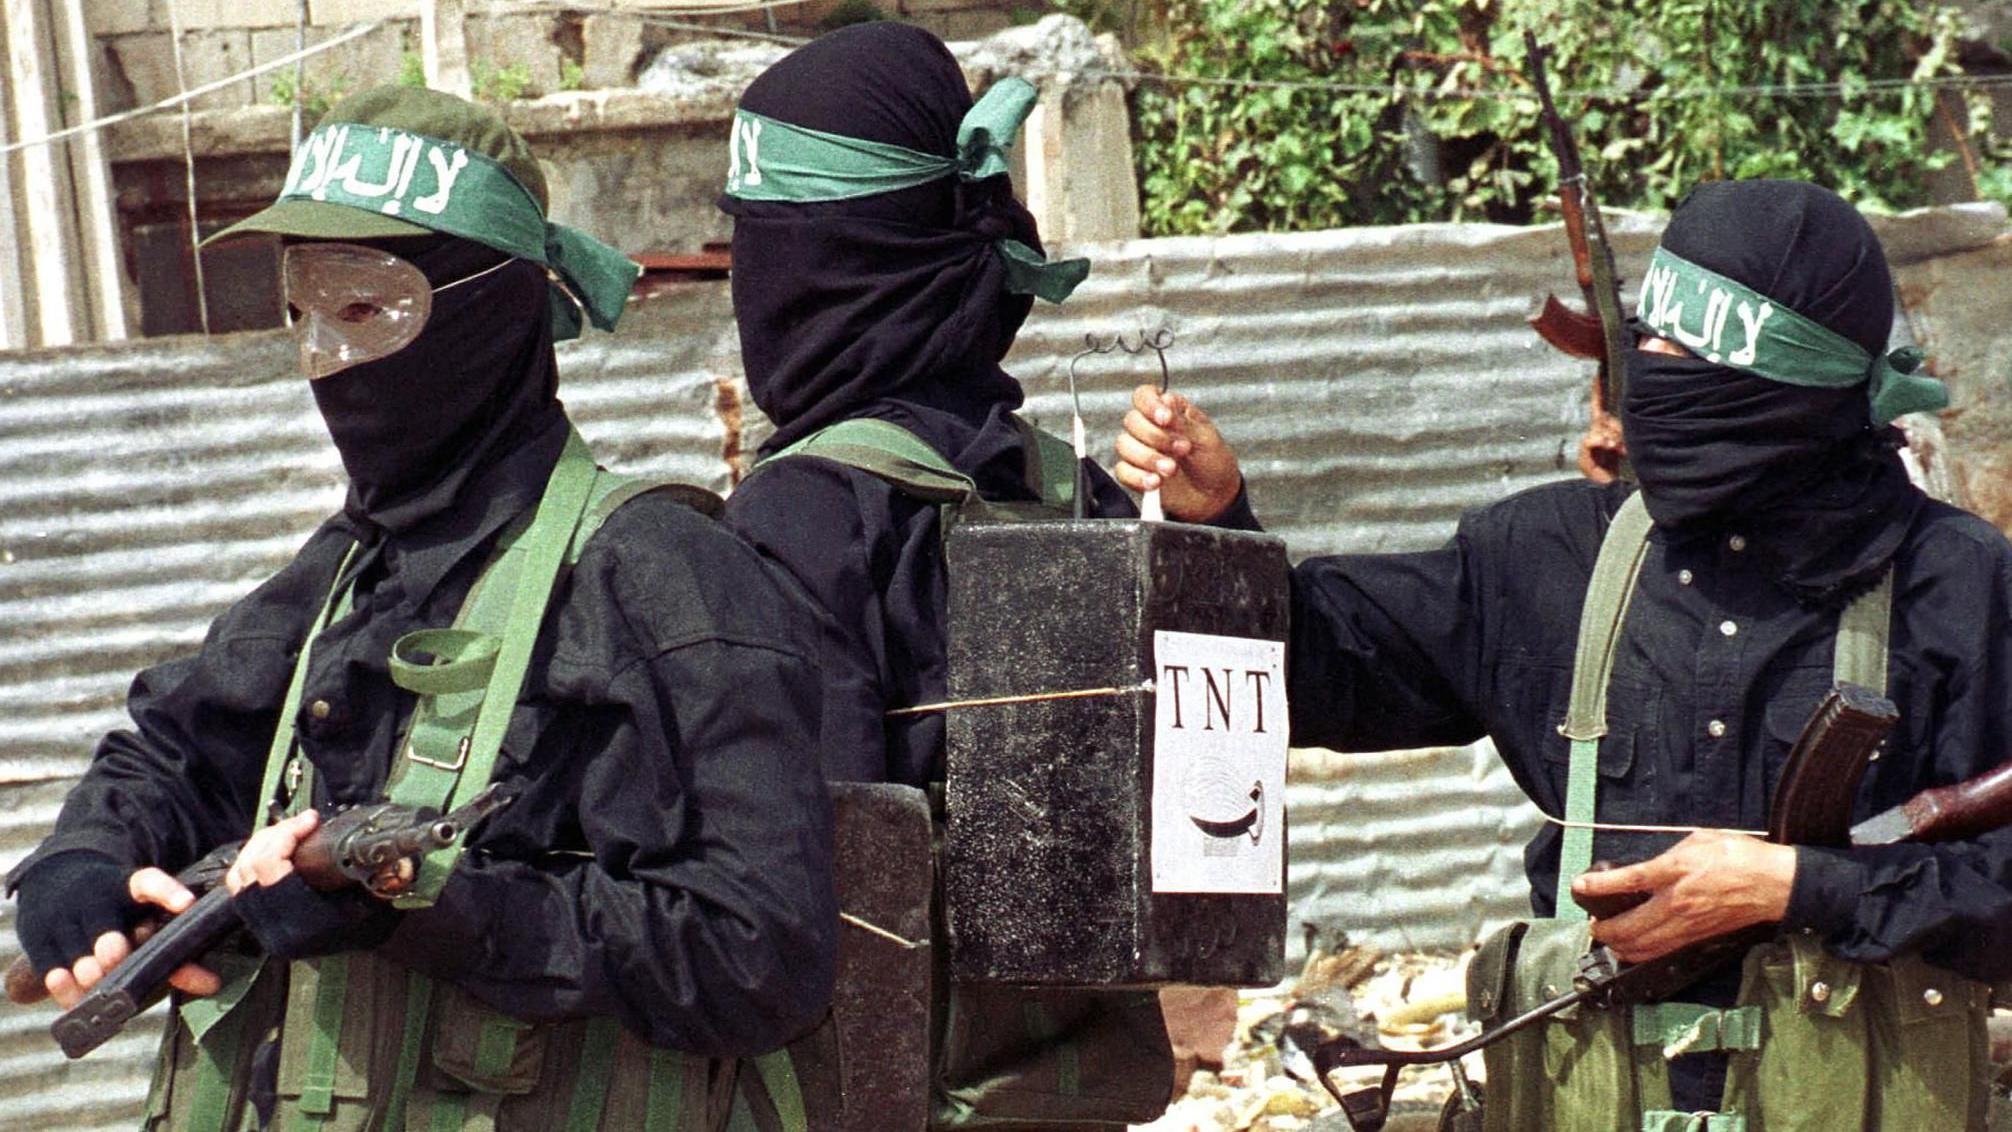 مسلح فلسطيني يربط صناديق تحمل علامة متفجرات تي إن تي على ظهر أحد رفاقه.